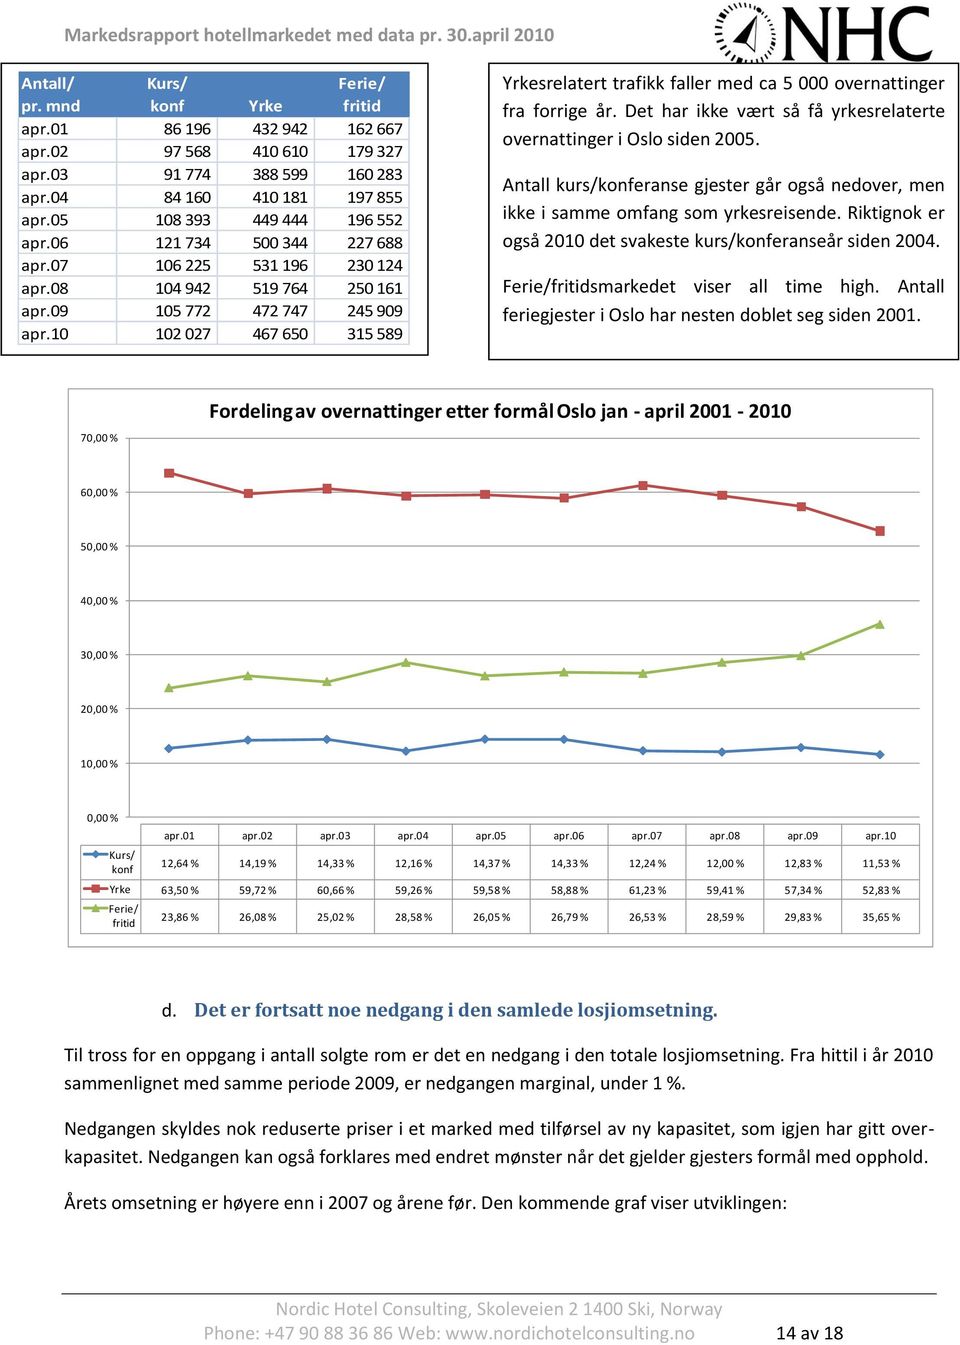 10 102 027 467 650 315 589 Yrkesrelatert trafikk faller med ca 5 000 overnattinger fra forrige år. Det har ikke vært så få yrkesrelaterte overnattinger i Oslo siden 2005.